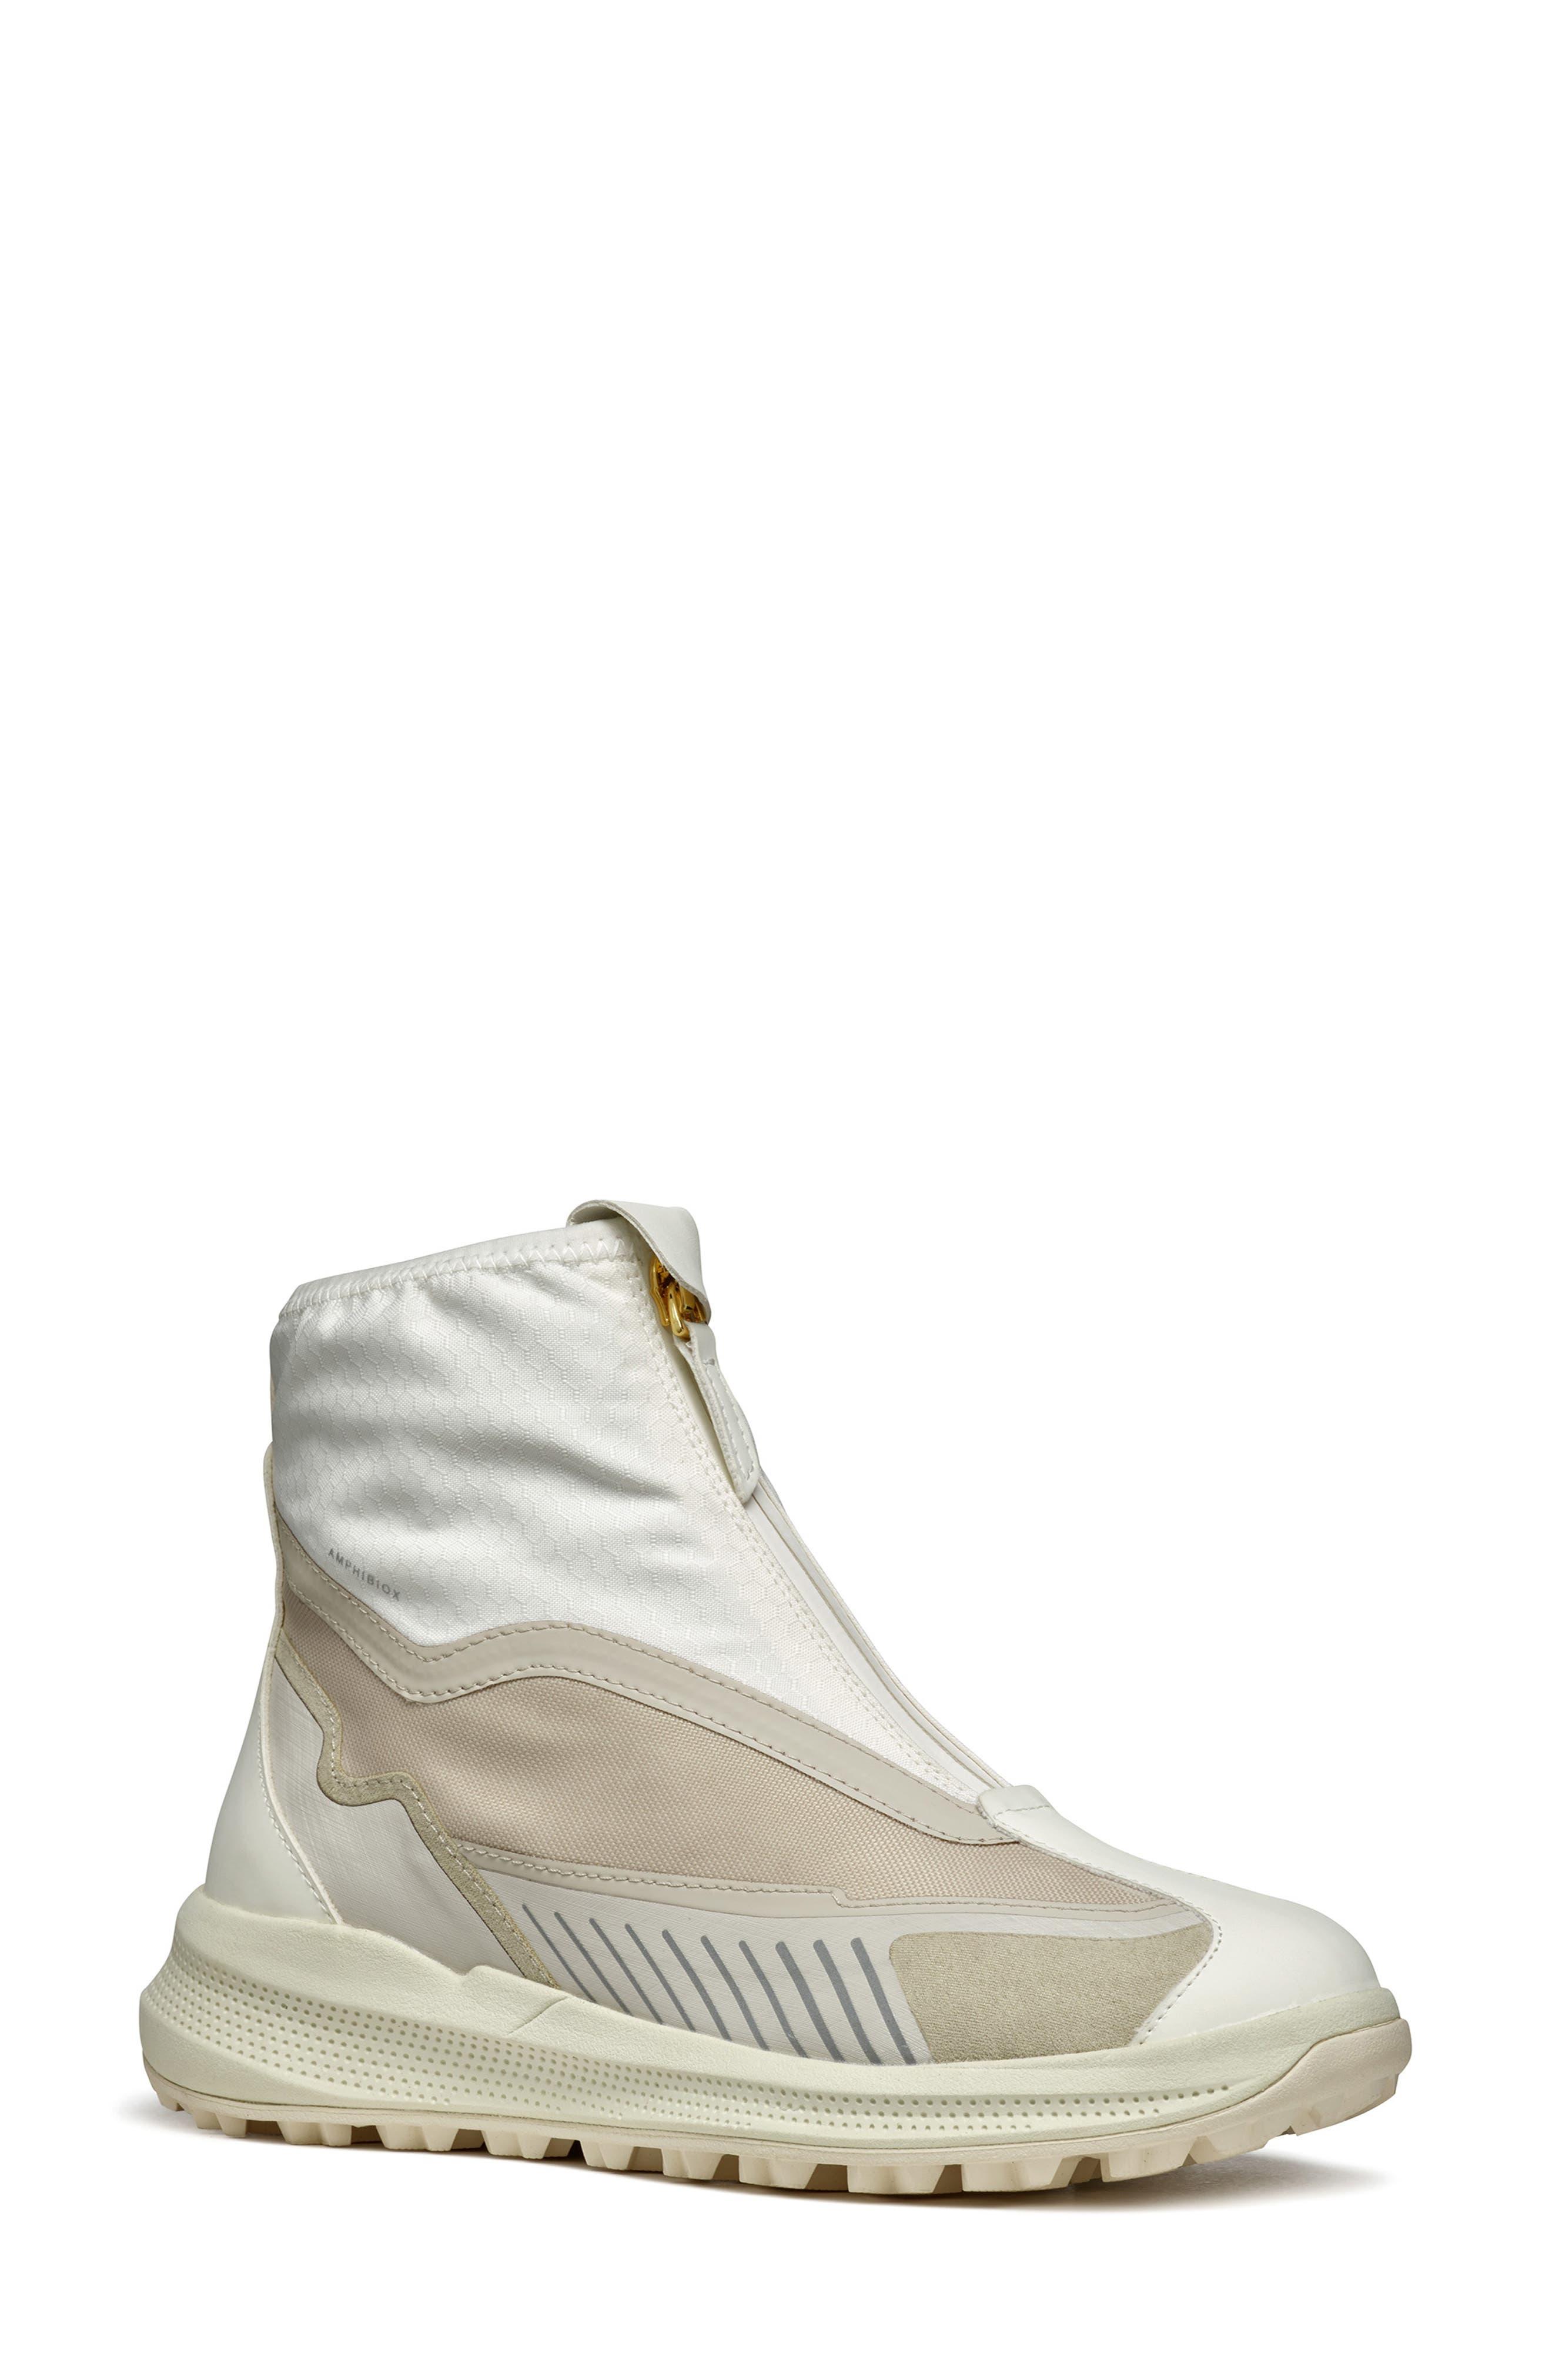 Geox Pg1x Amphibiox® Waterproof Sneaker Boot in White | Lyst